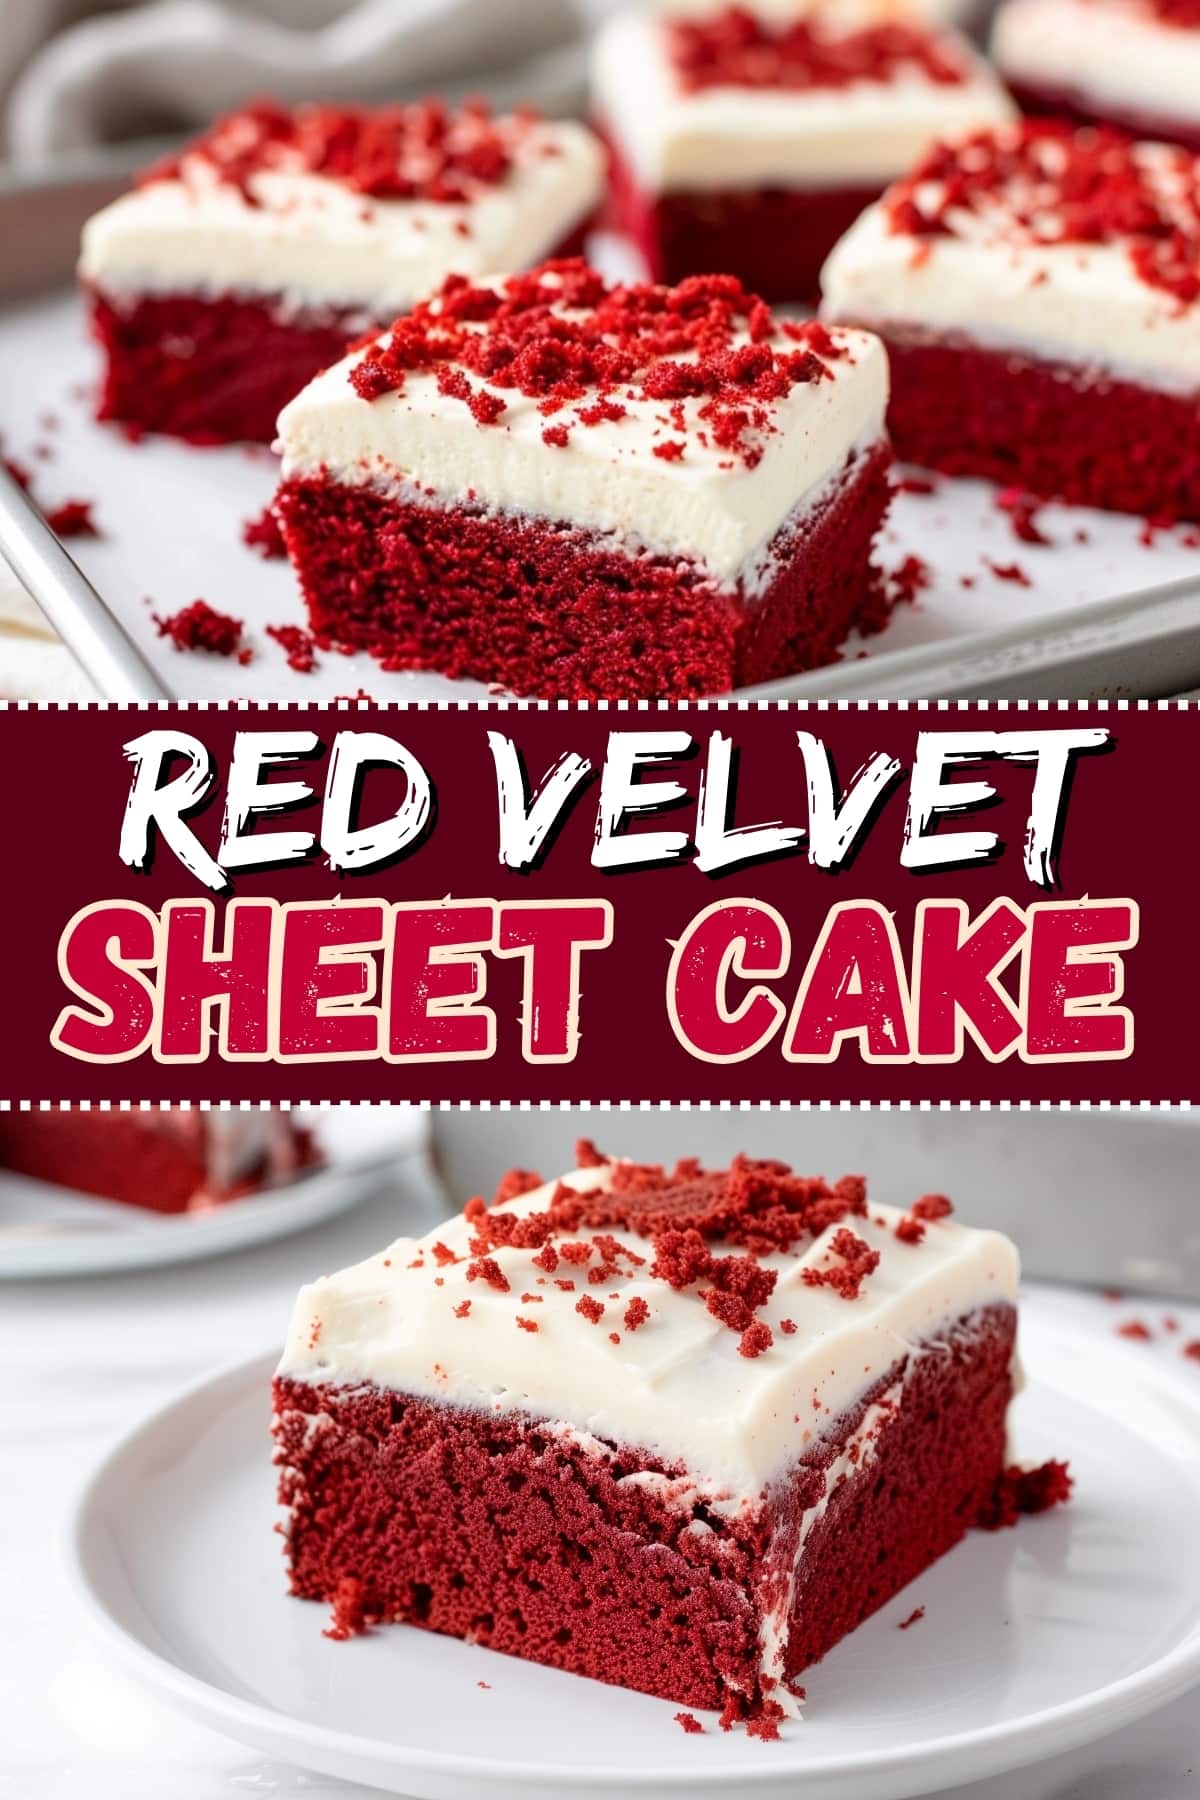 Red velvet sheet cake.